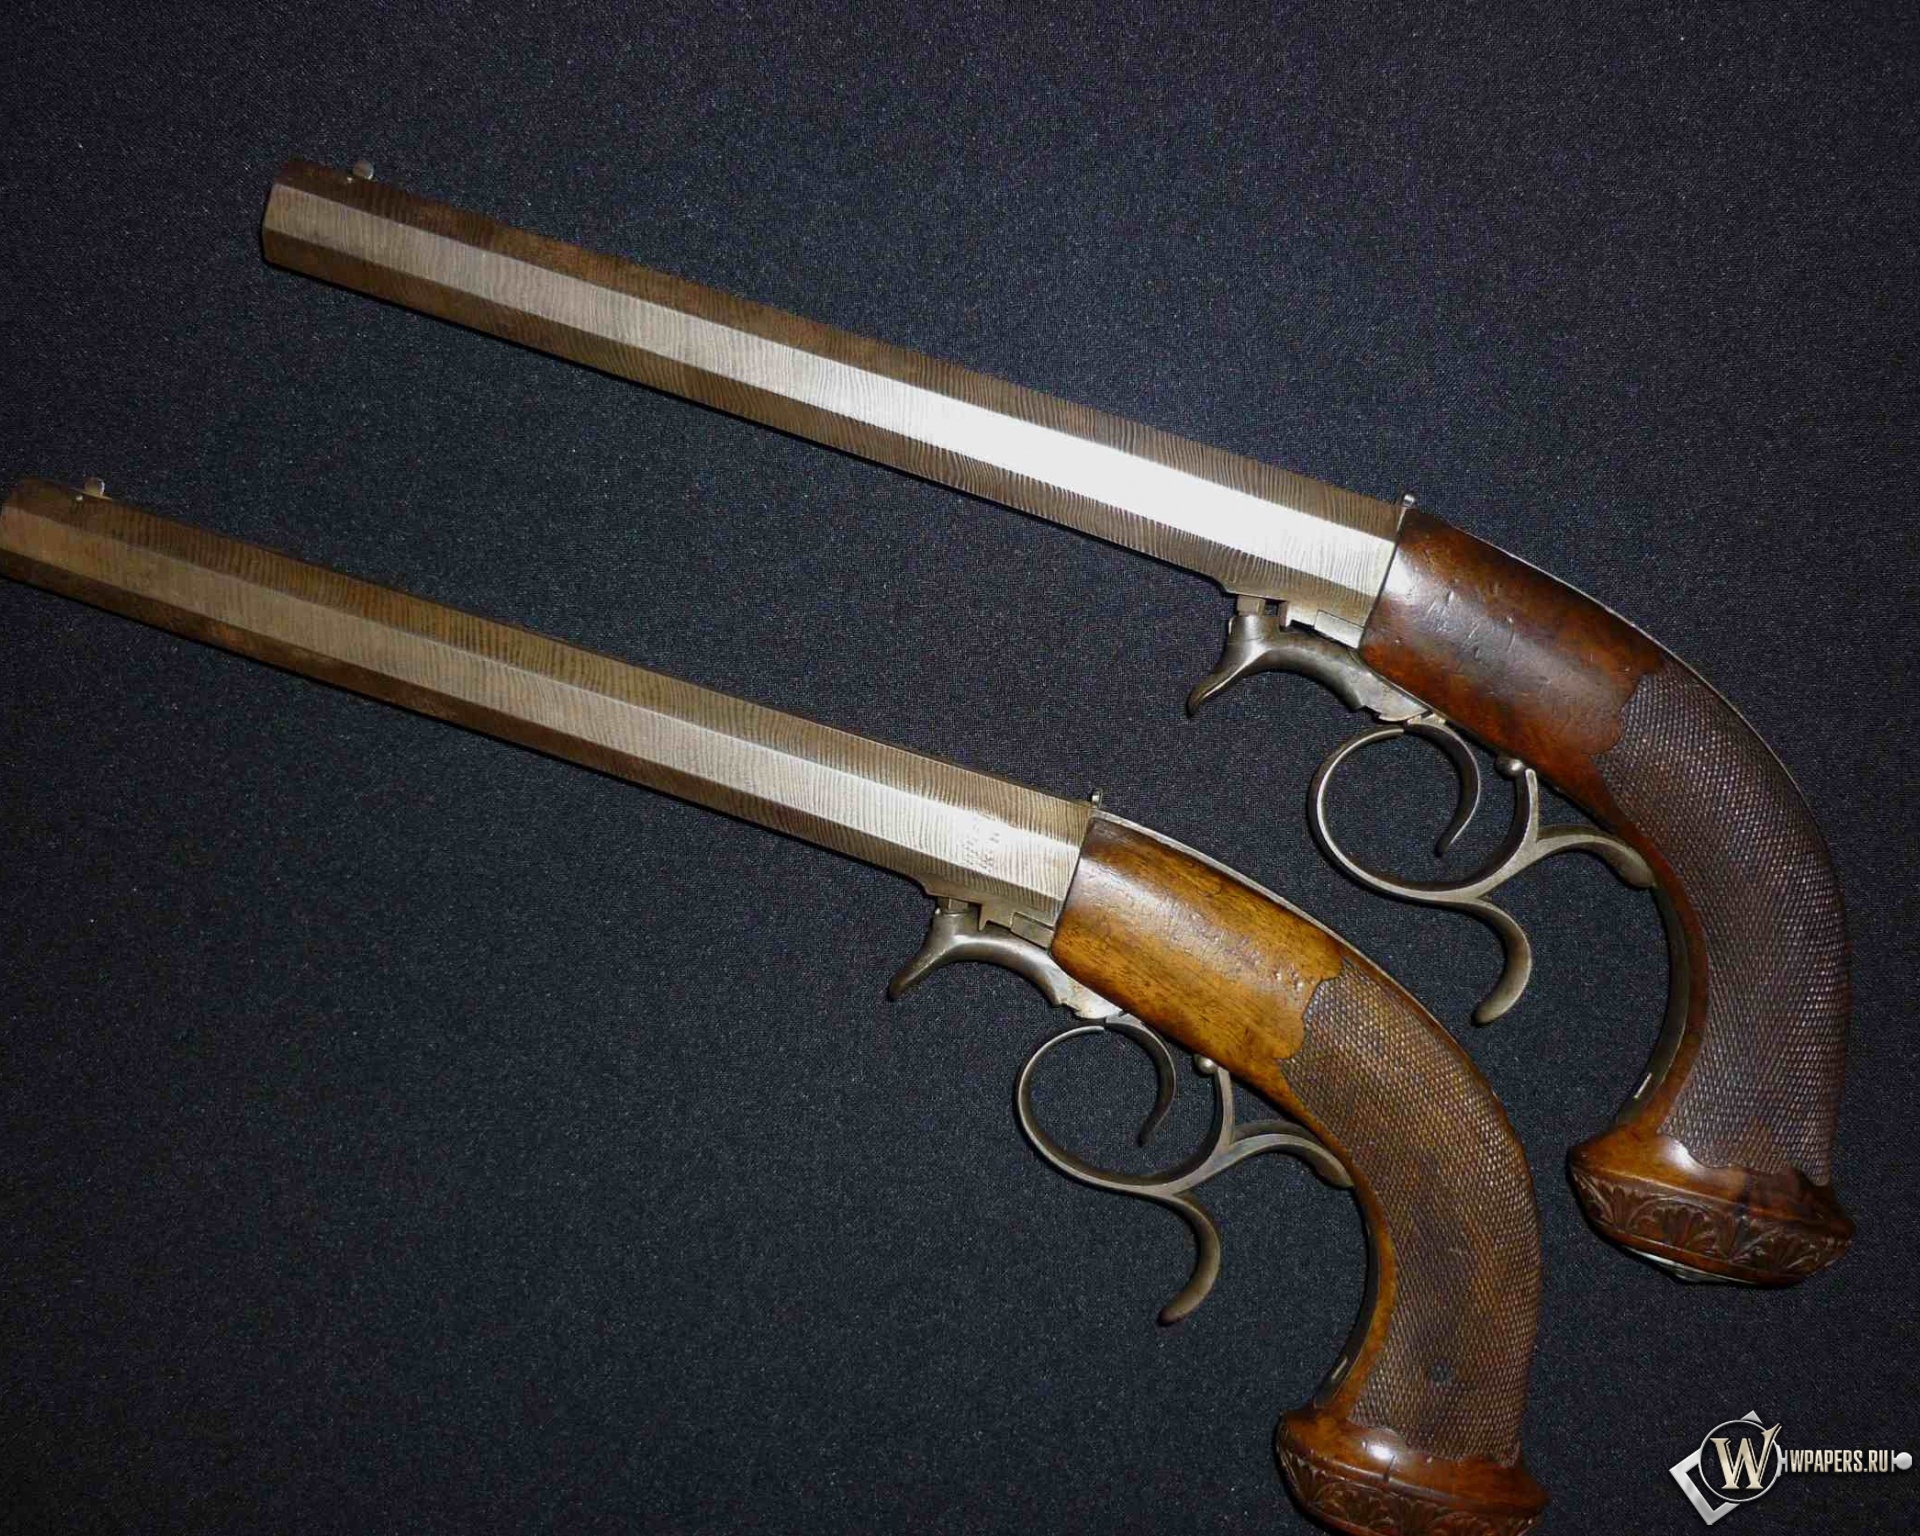 Дуэльные пистолеты 40-50 годы XIX века 1920x1536